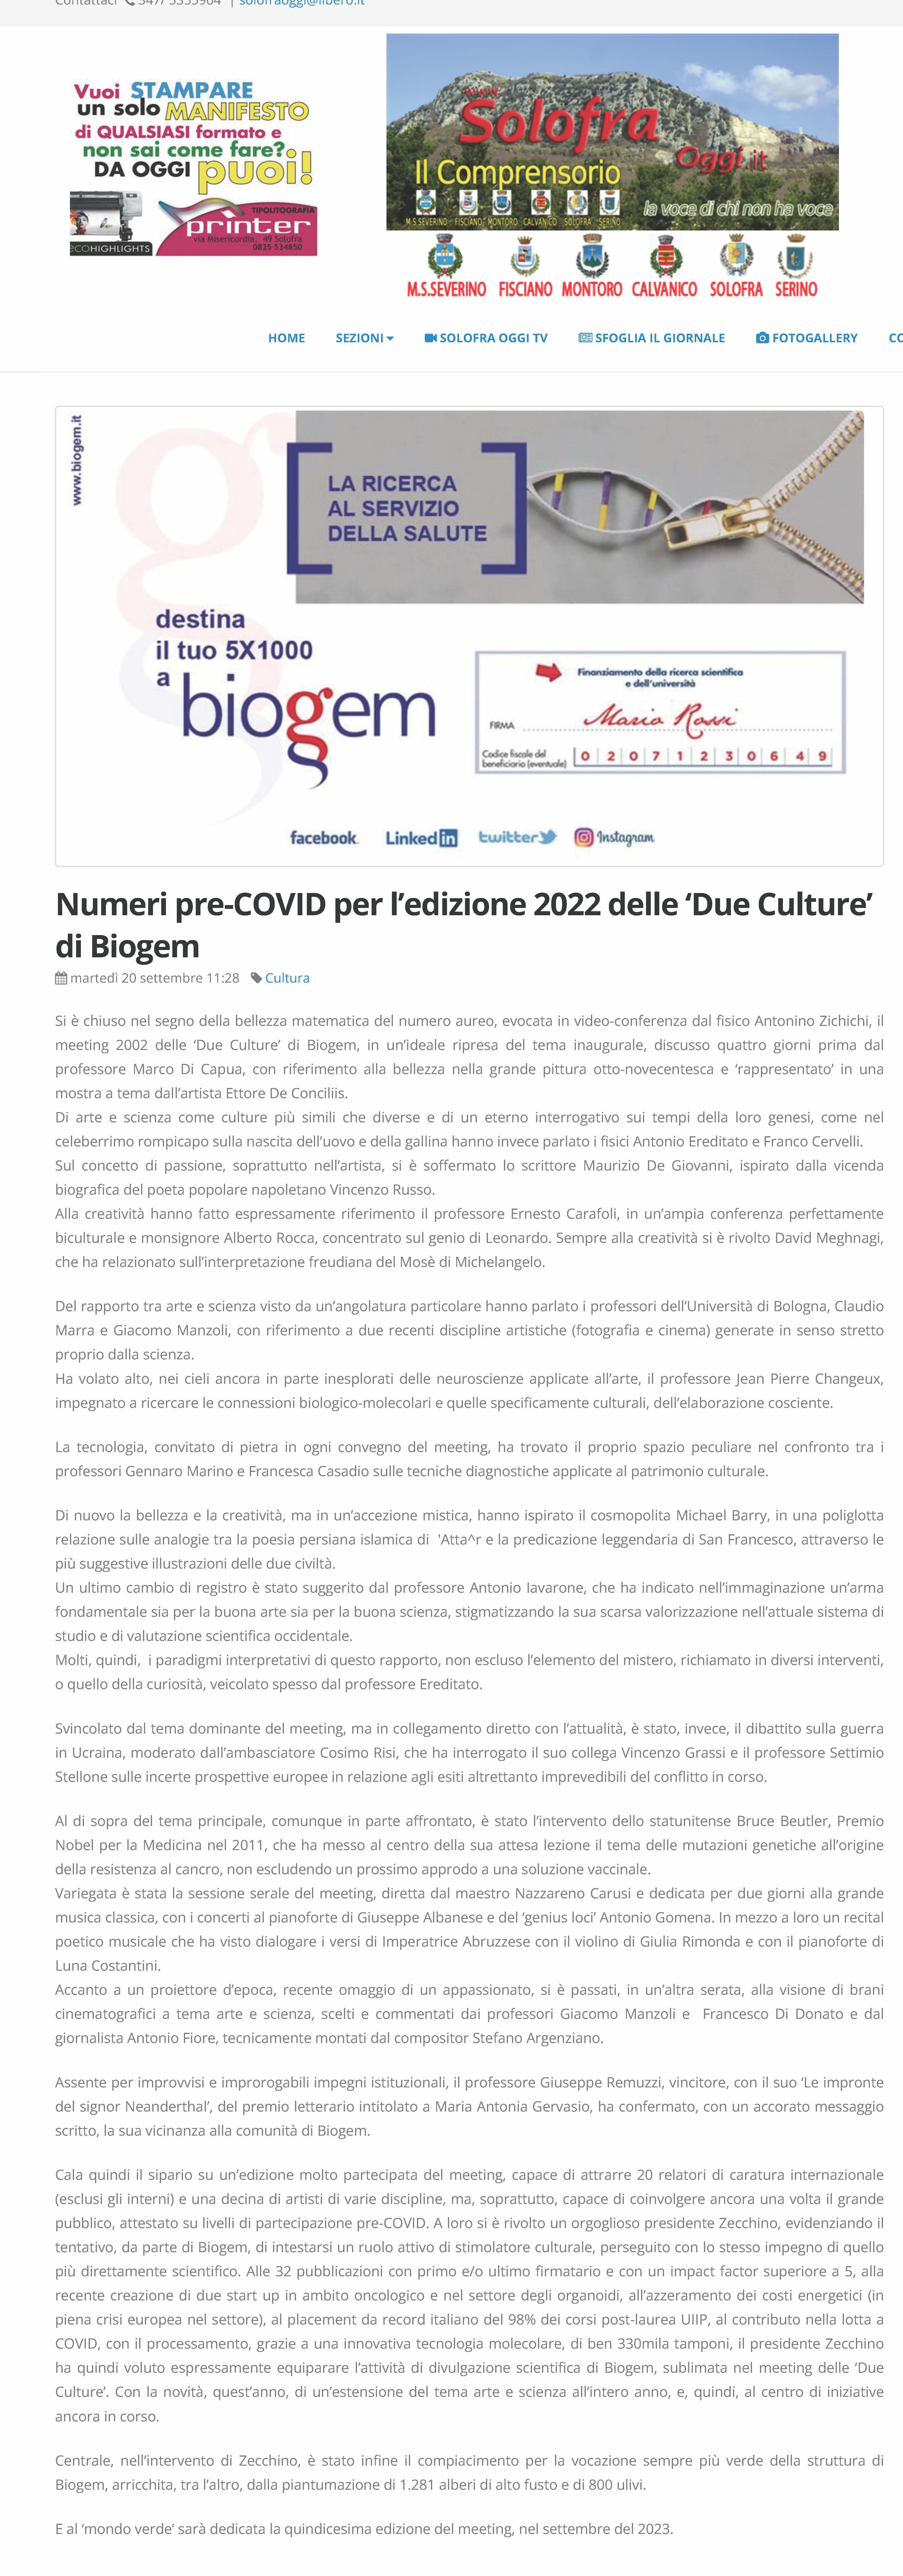 Numeri pre-COVID per l’edizione 2022 delle ‘Due Culture’ di Biogem